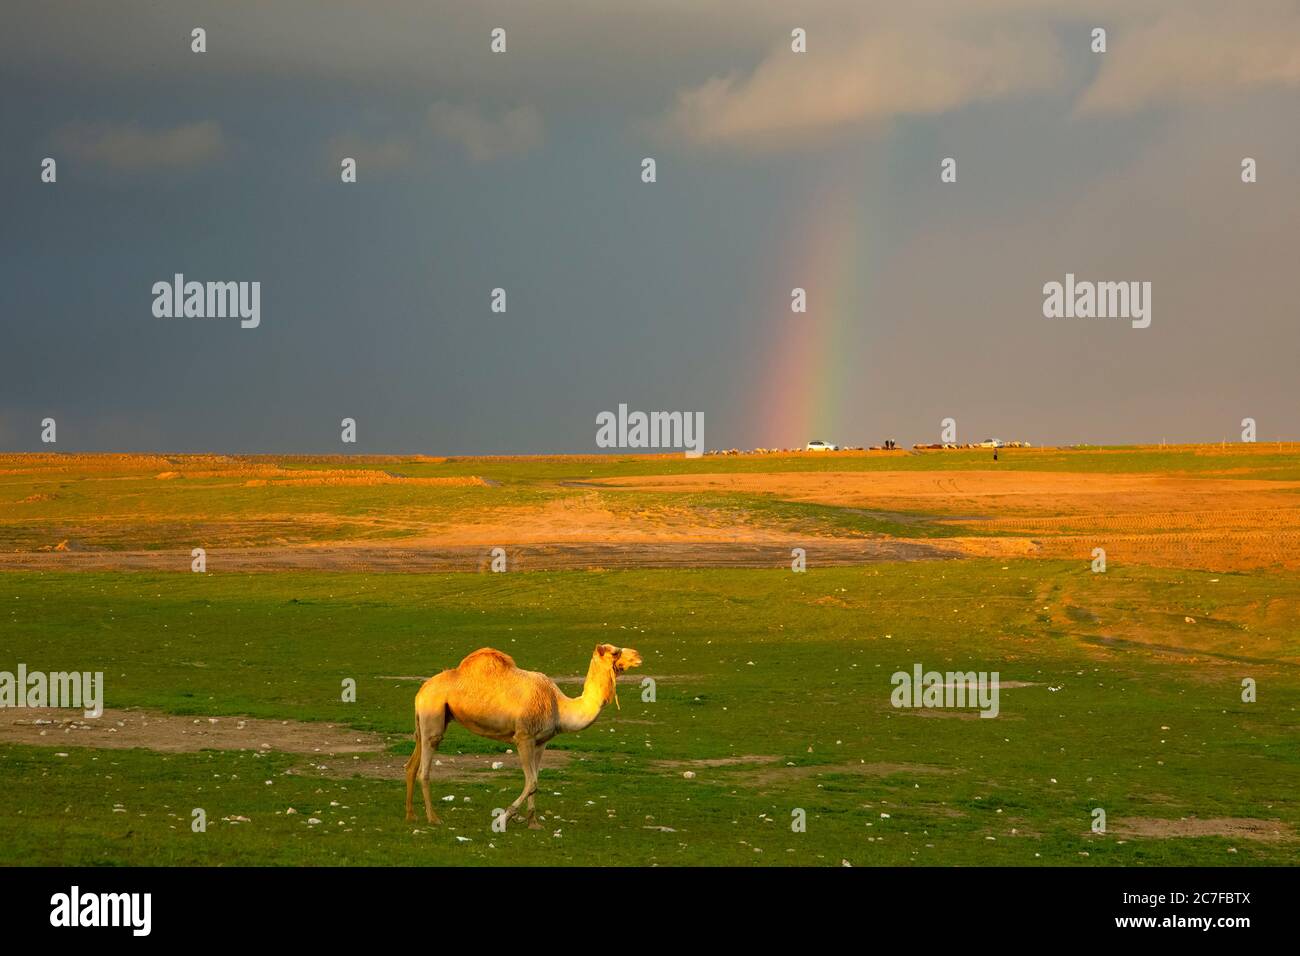 Un dromadaire solitaire ou un chameau arabe (Camelus dromedarius) marchant dans le désert à la tombée de la nuit. Un arc-en-ciel peut être vu en arrière-plan. Photographié dans la Neg Banque D'Images